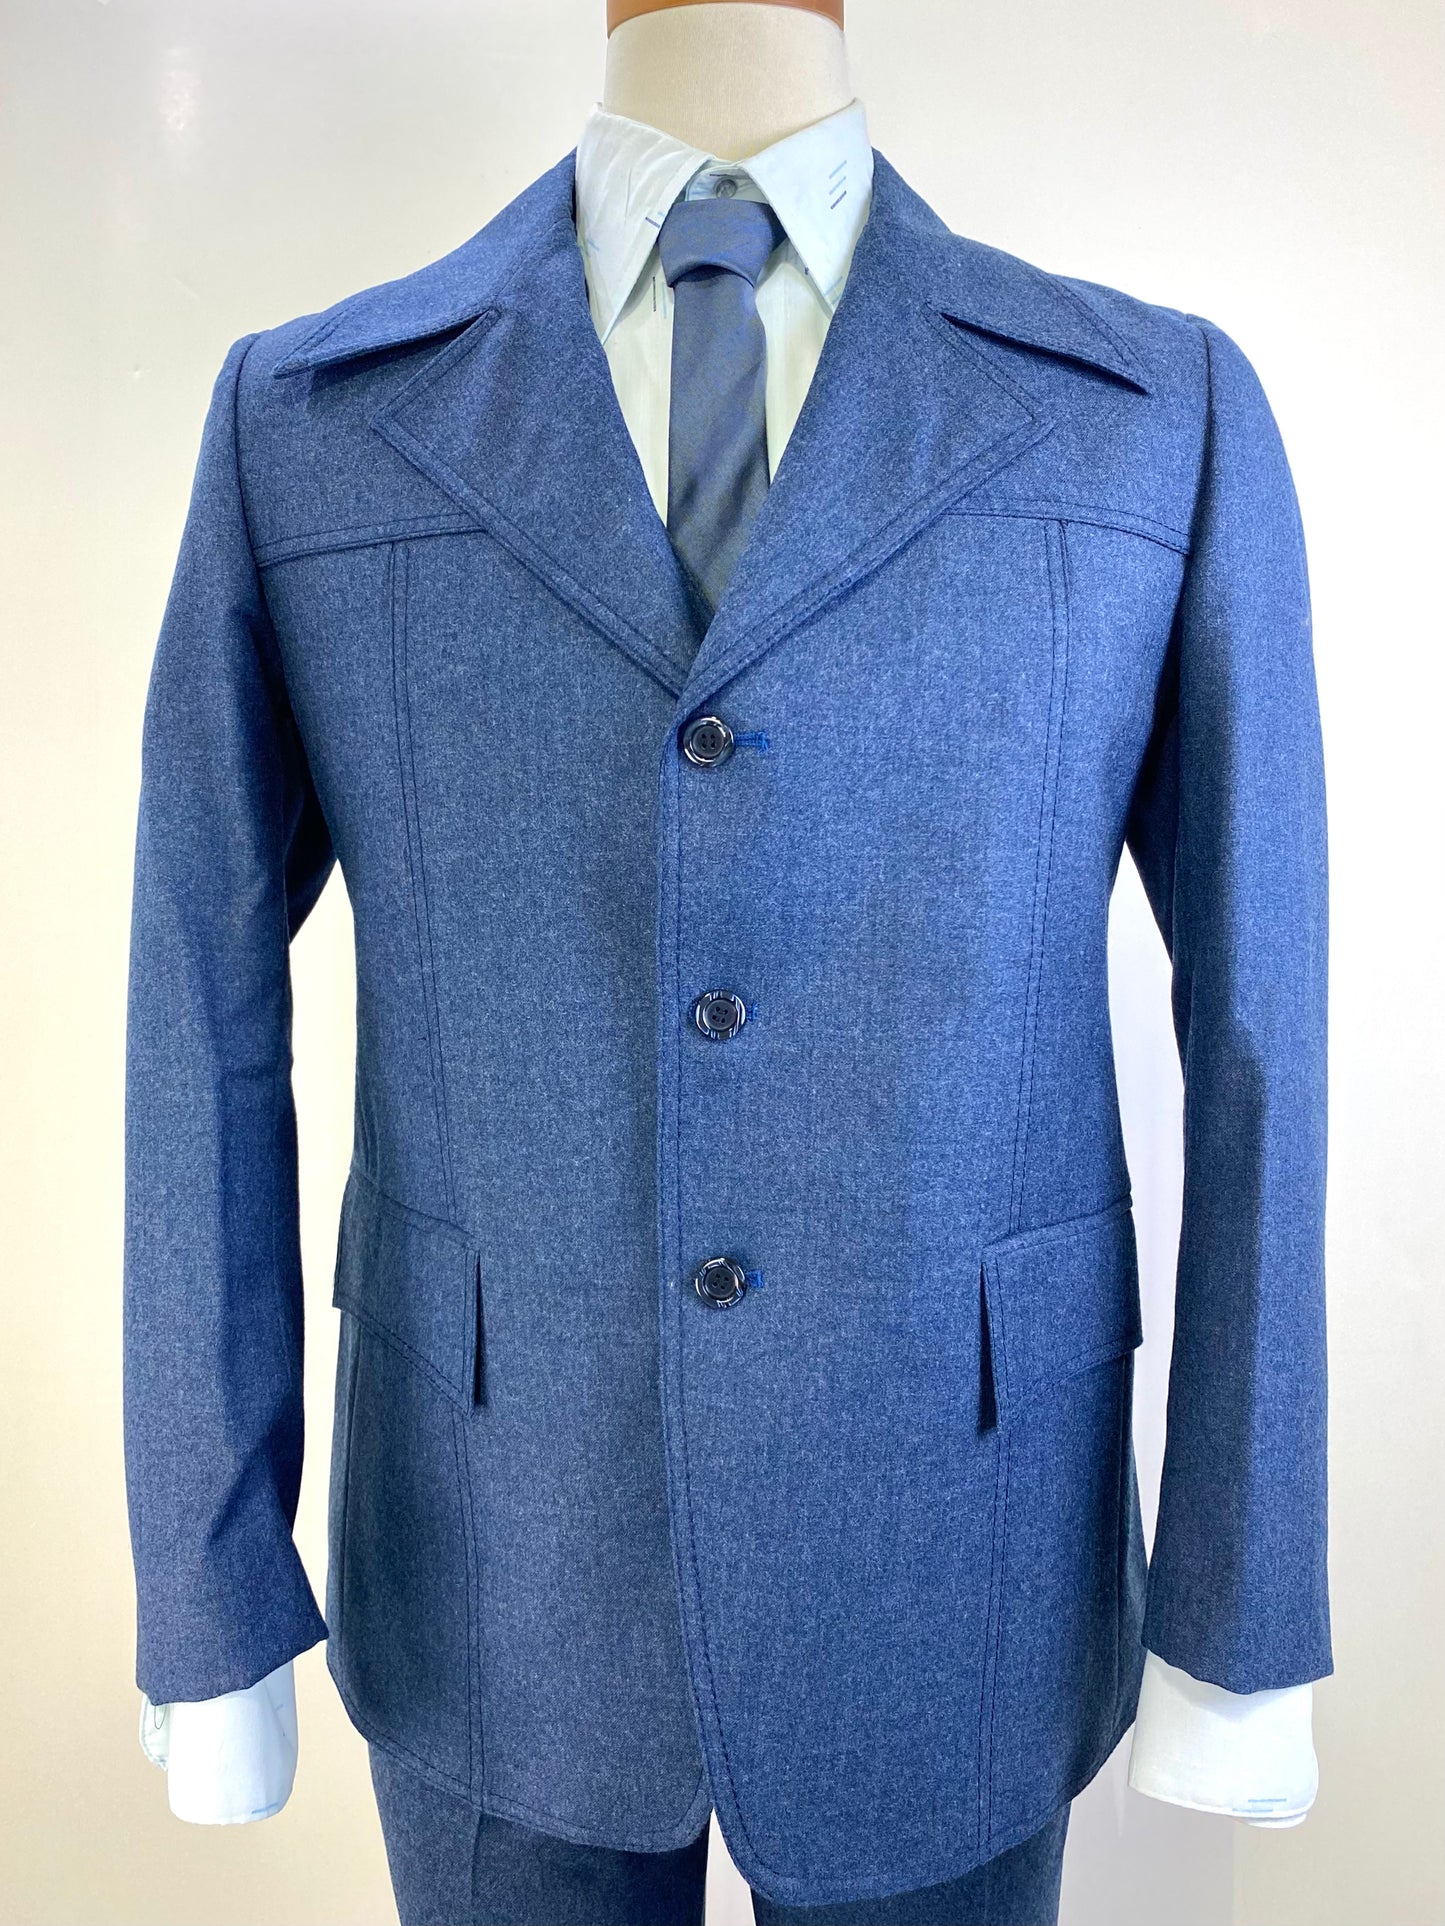 1970s Vintage Deadstock Men's Suit, Blue Wool 3-Piece Suit, Kent Tailoring, NOS